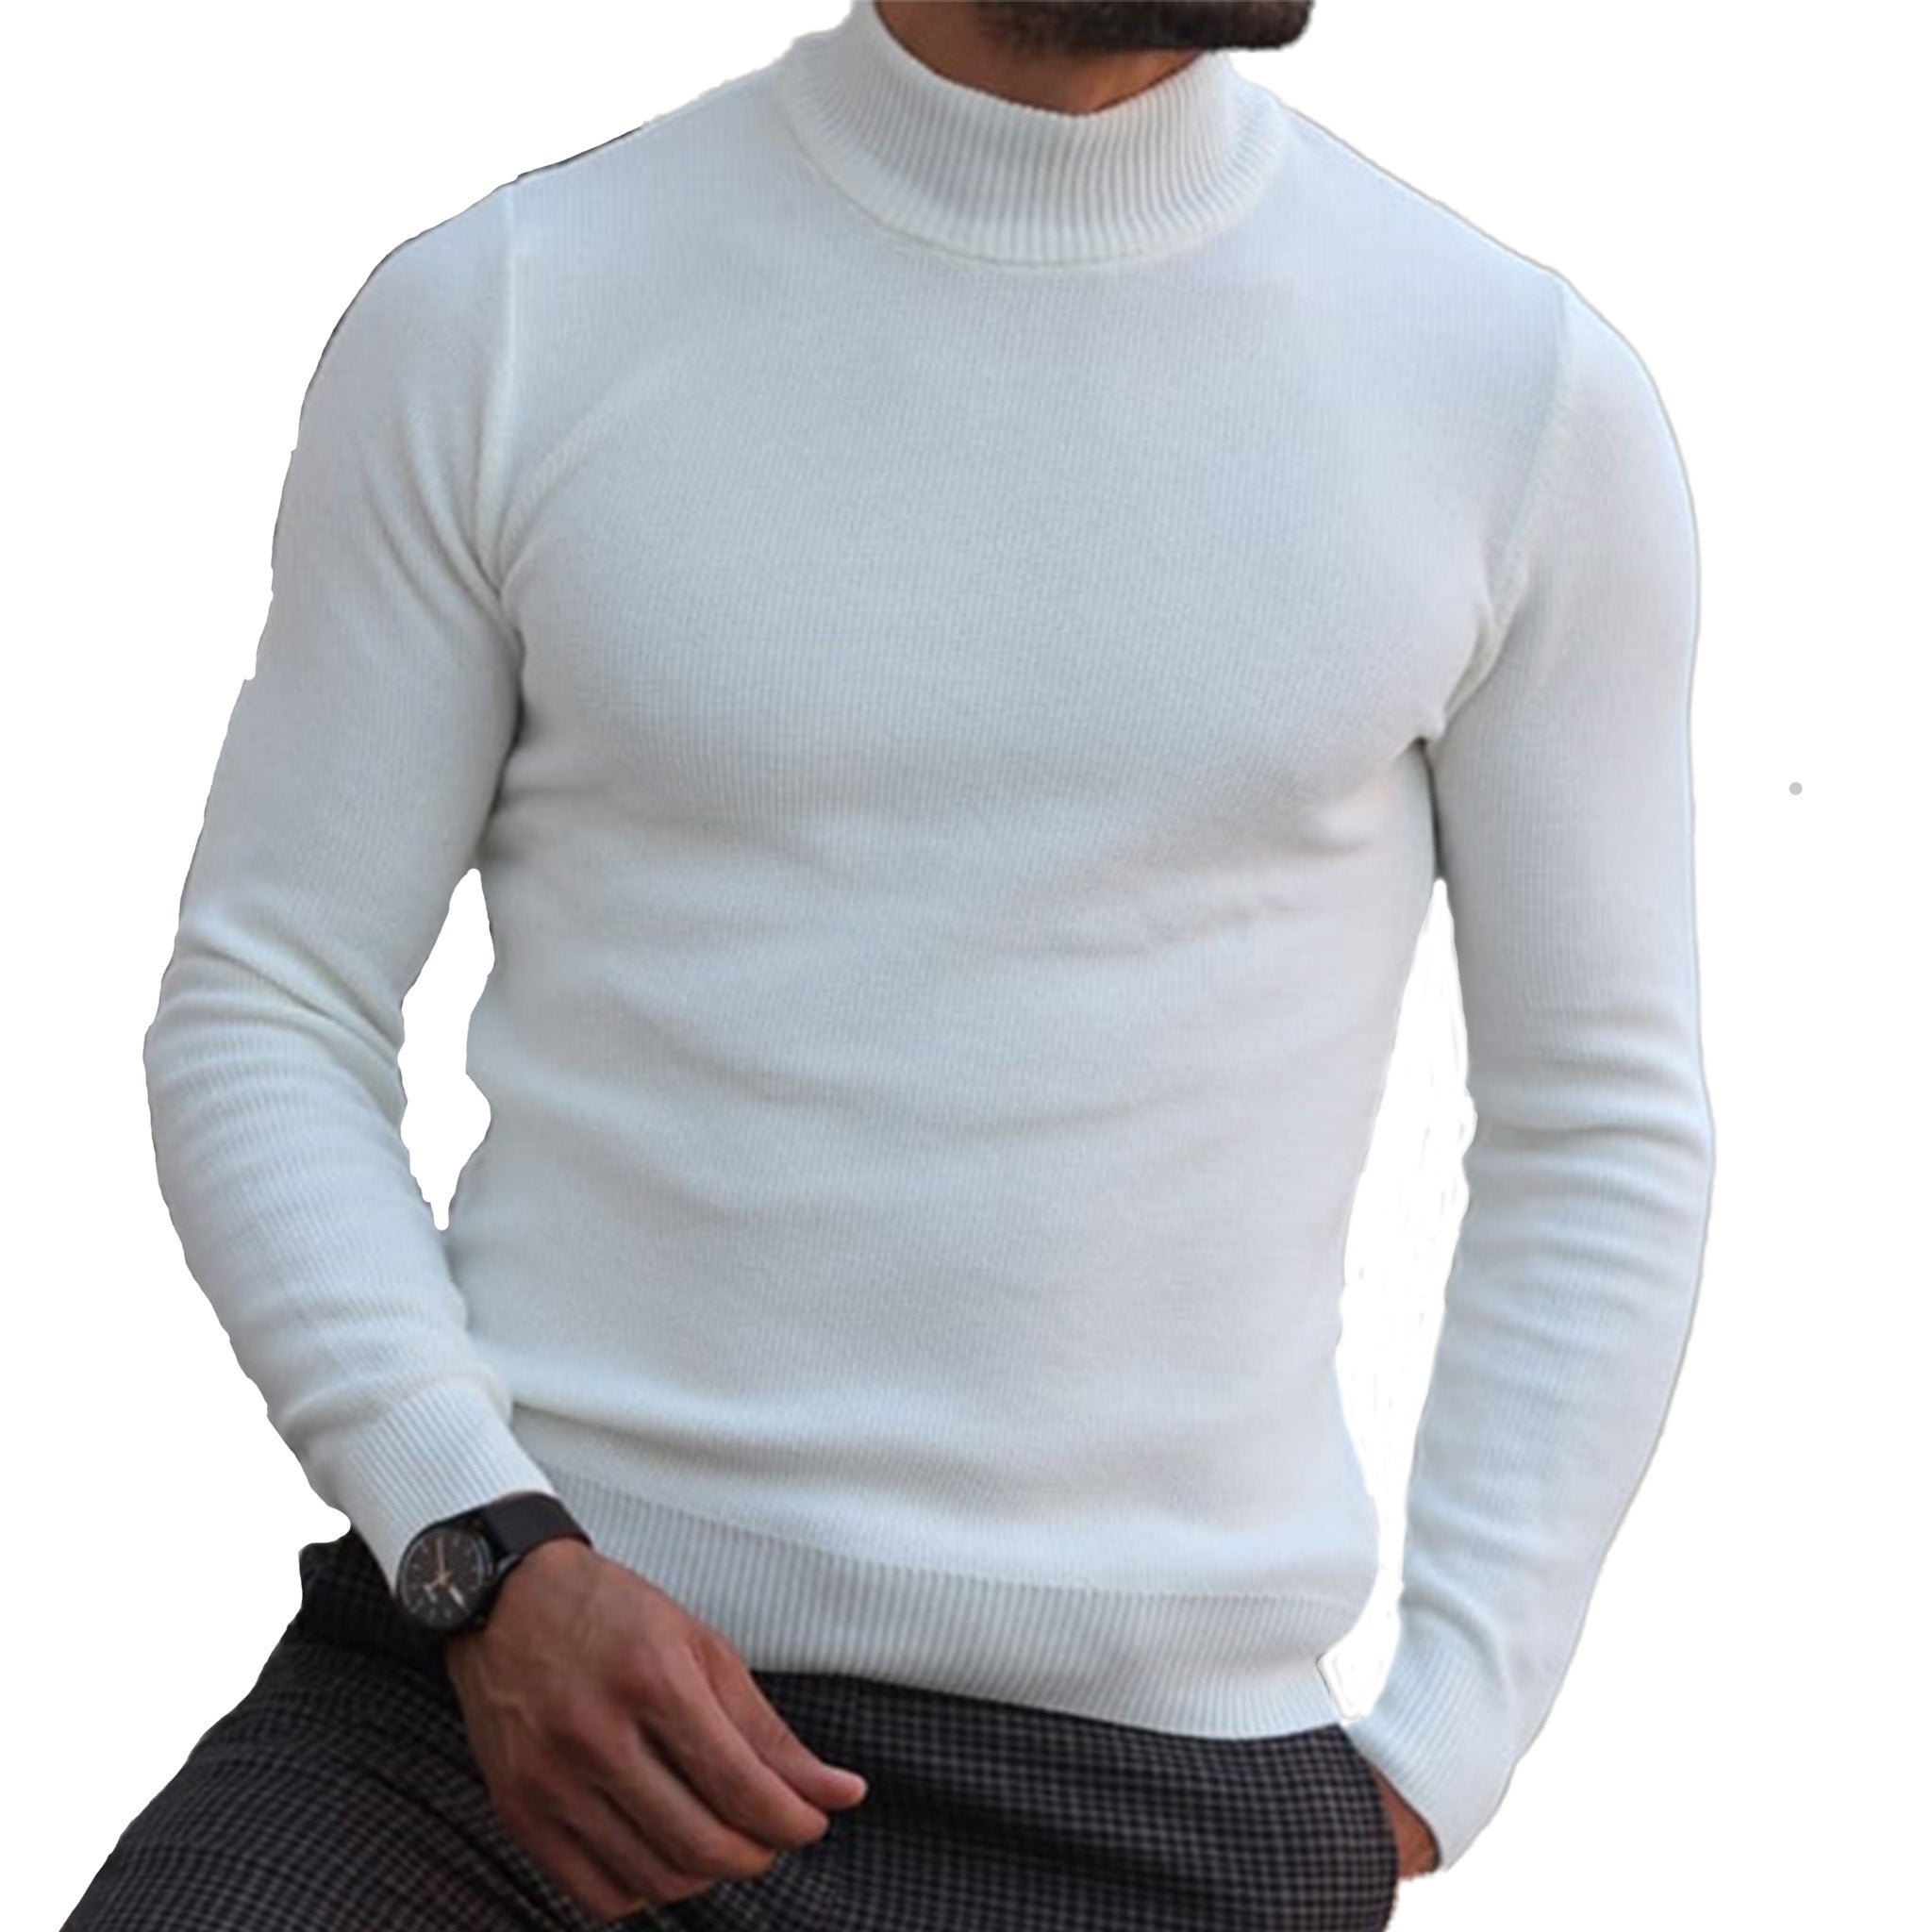 Men's White Turtle Neck Sweater